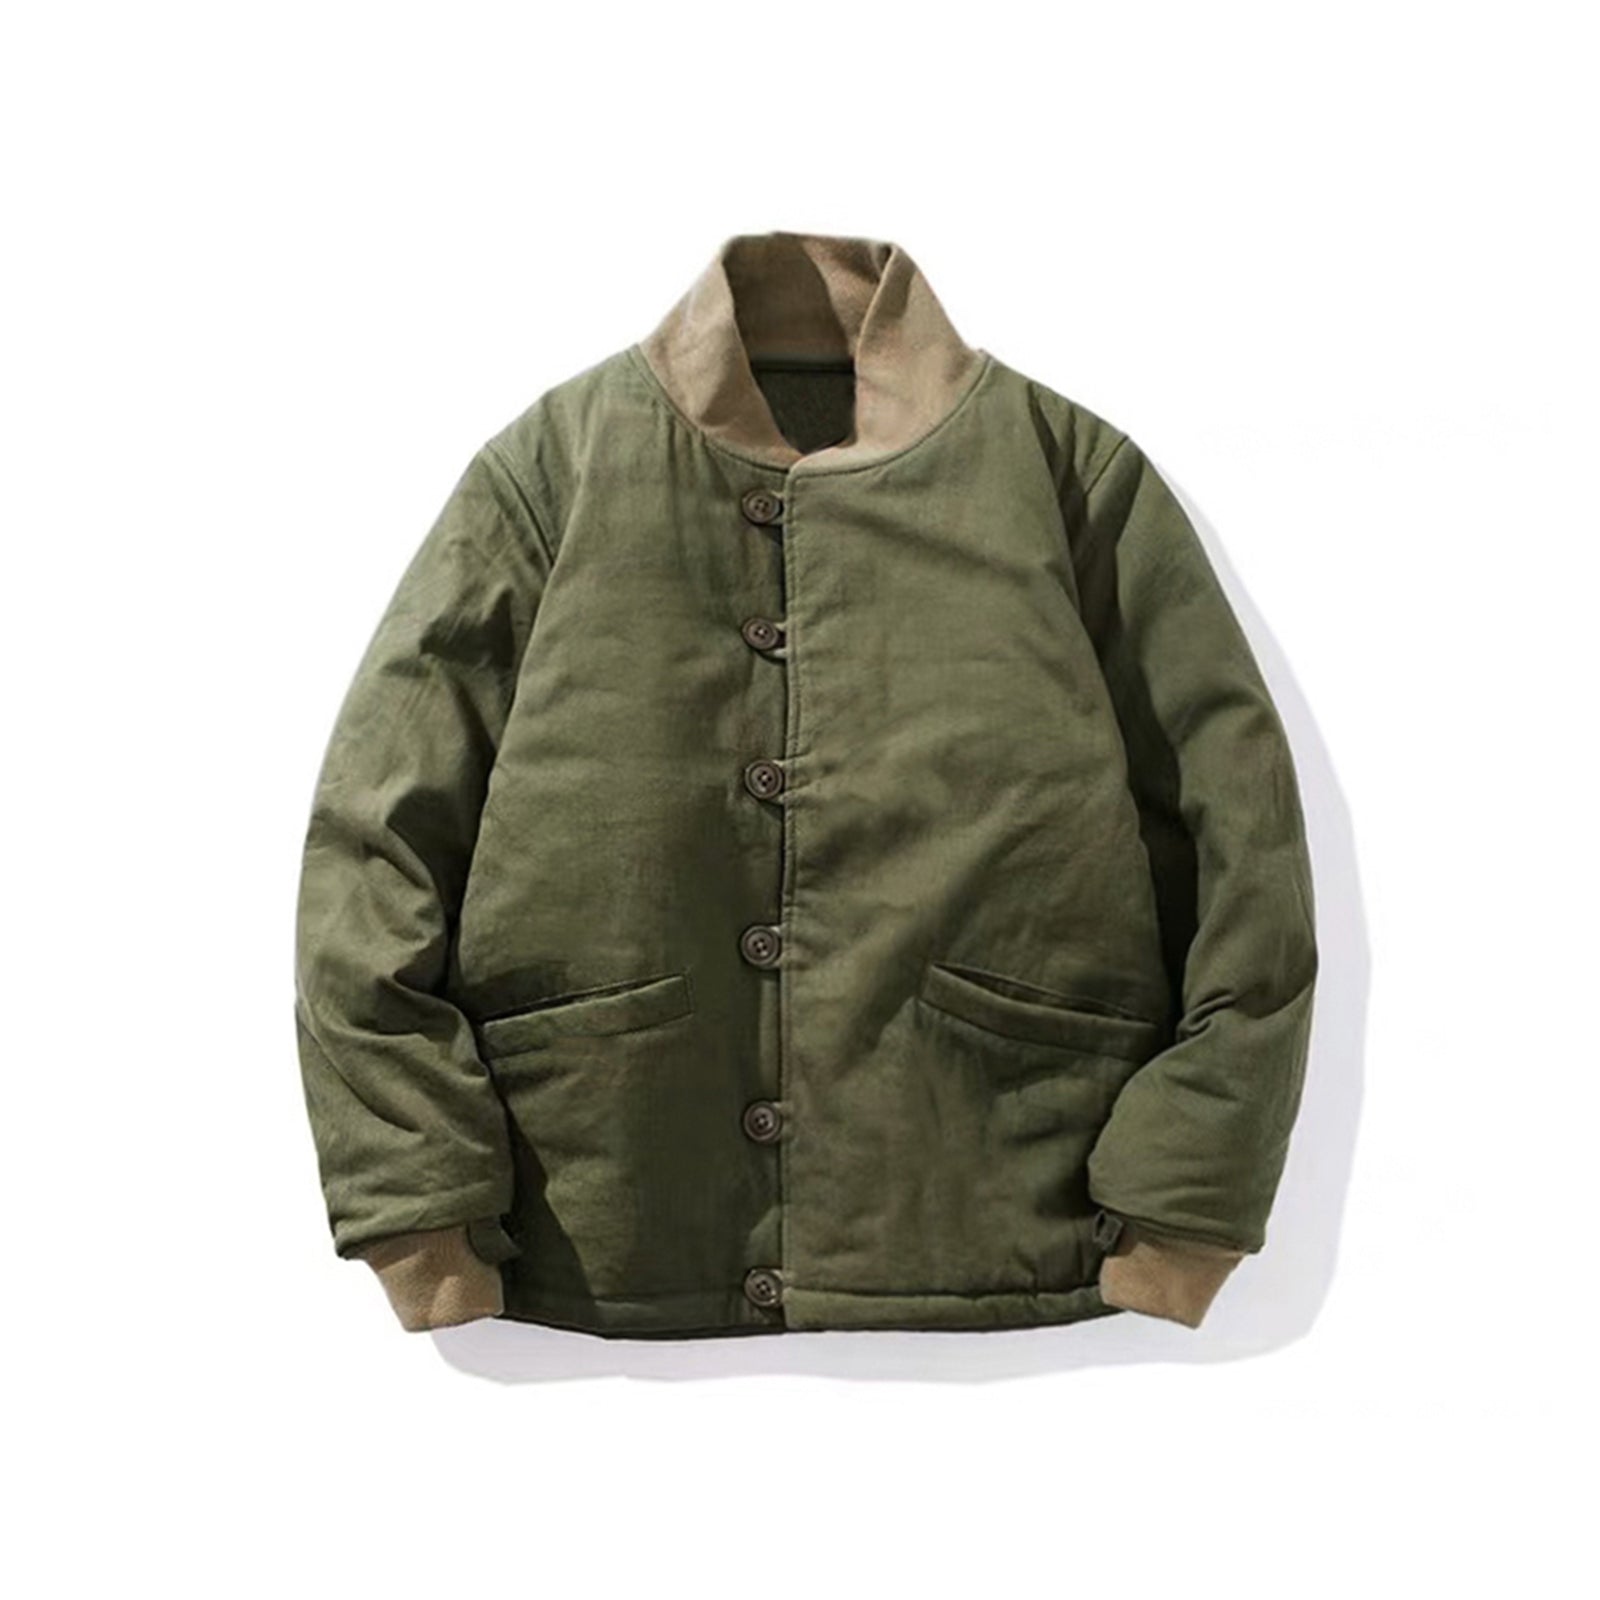 M43 Military Style Cotton Coat Ami khaki Retro Work Jacket